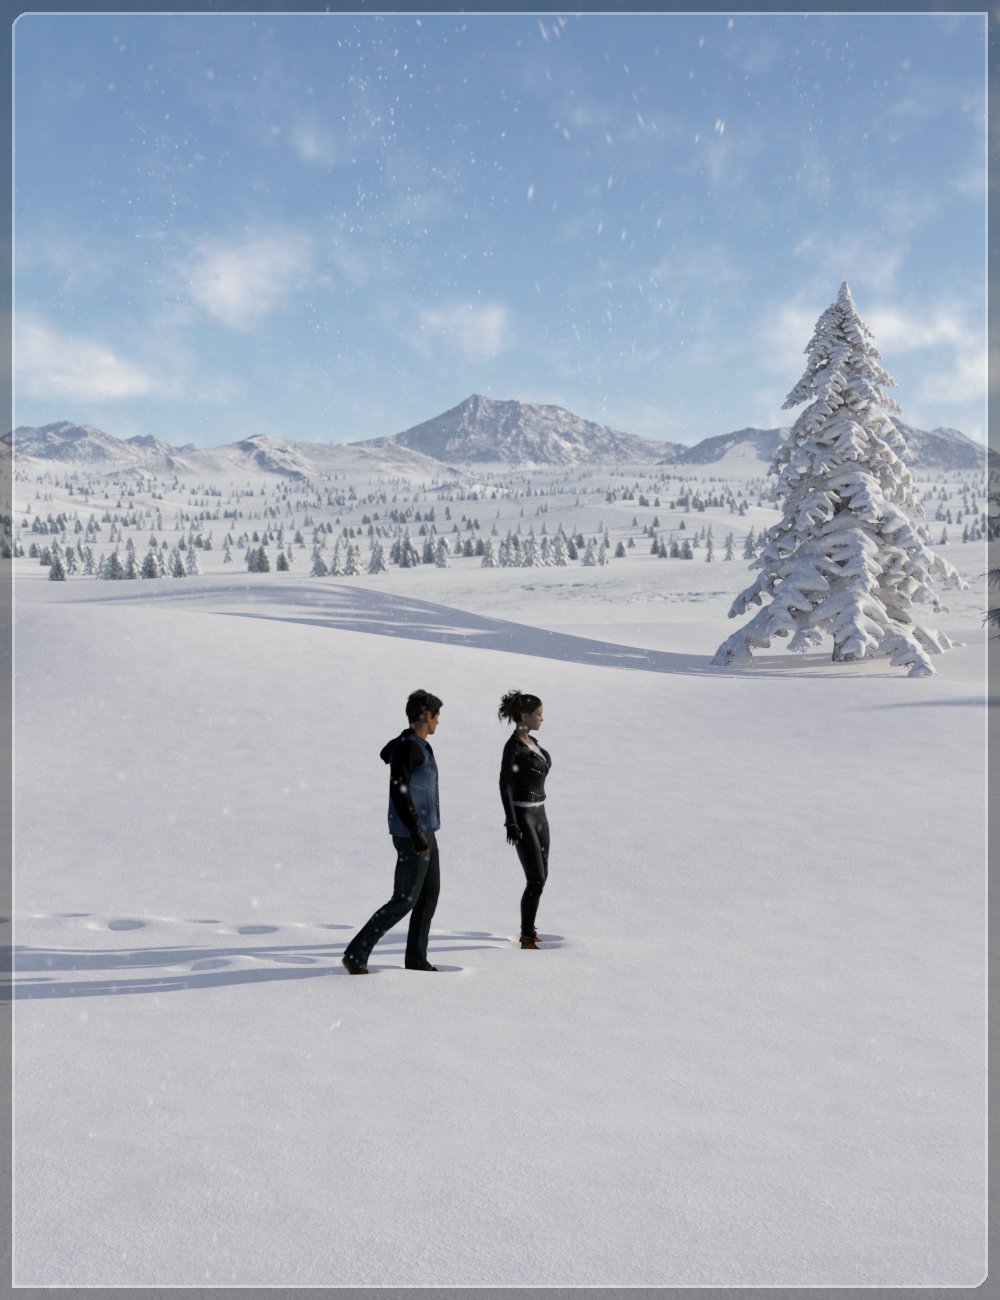 Easy Environments: Winter II by: Flipmode, 3D Models by Daz 3D